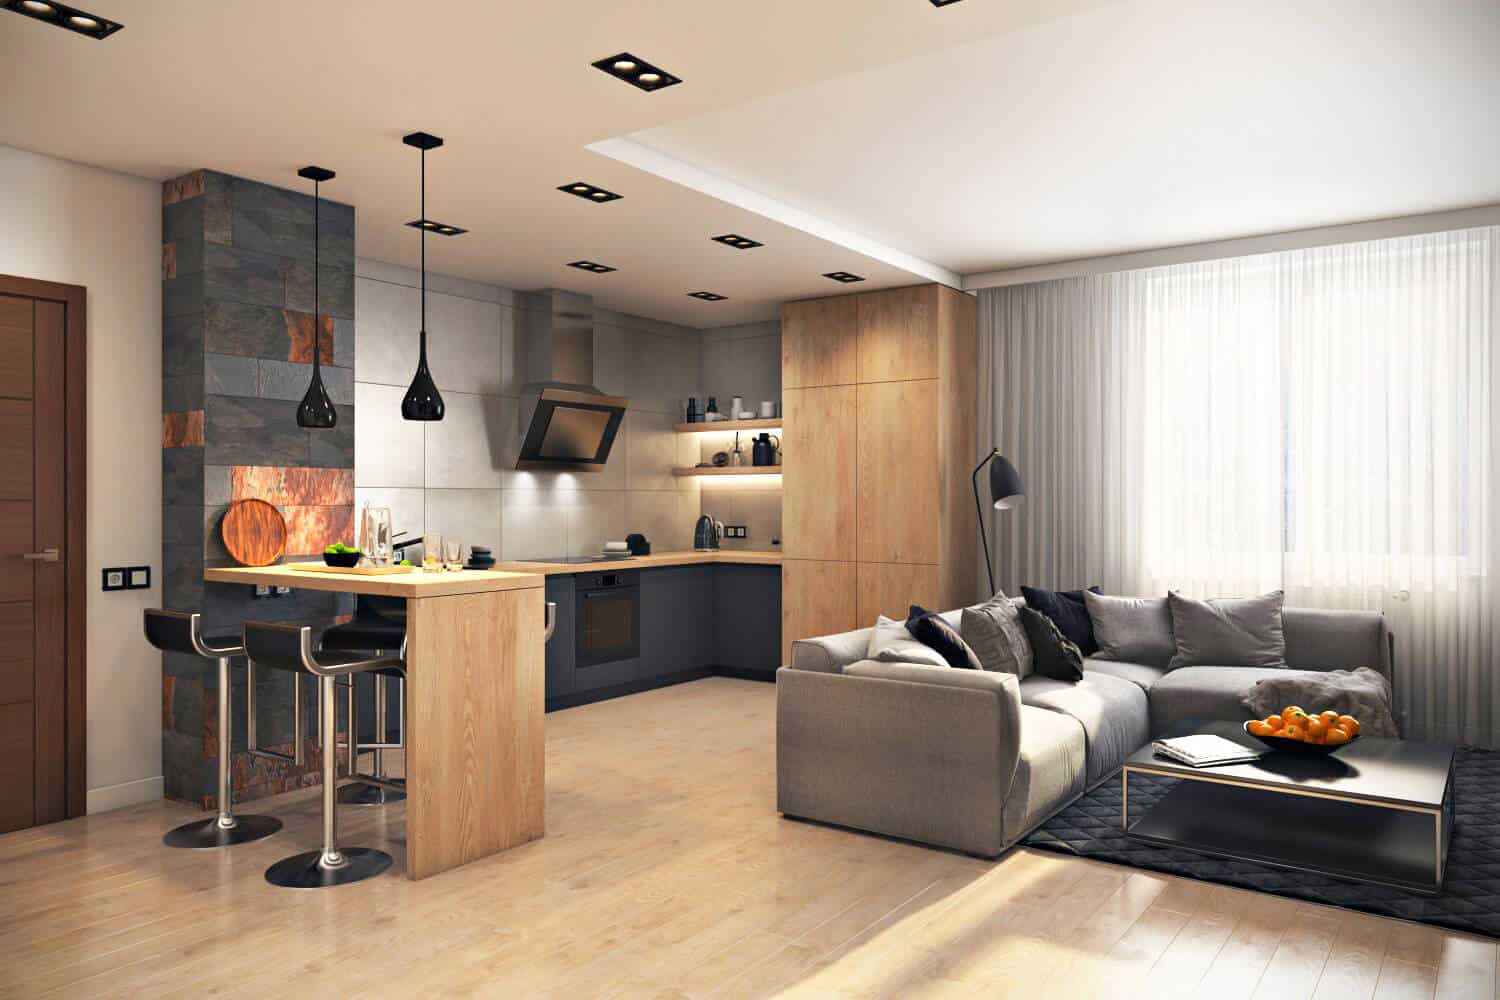 ánh sáng tự nhiên cho thiết kế bếp và phòng khách liên thông